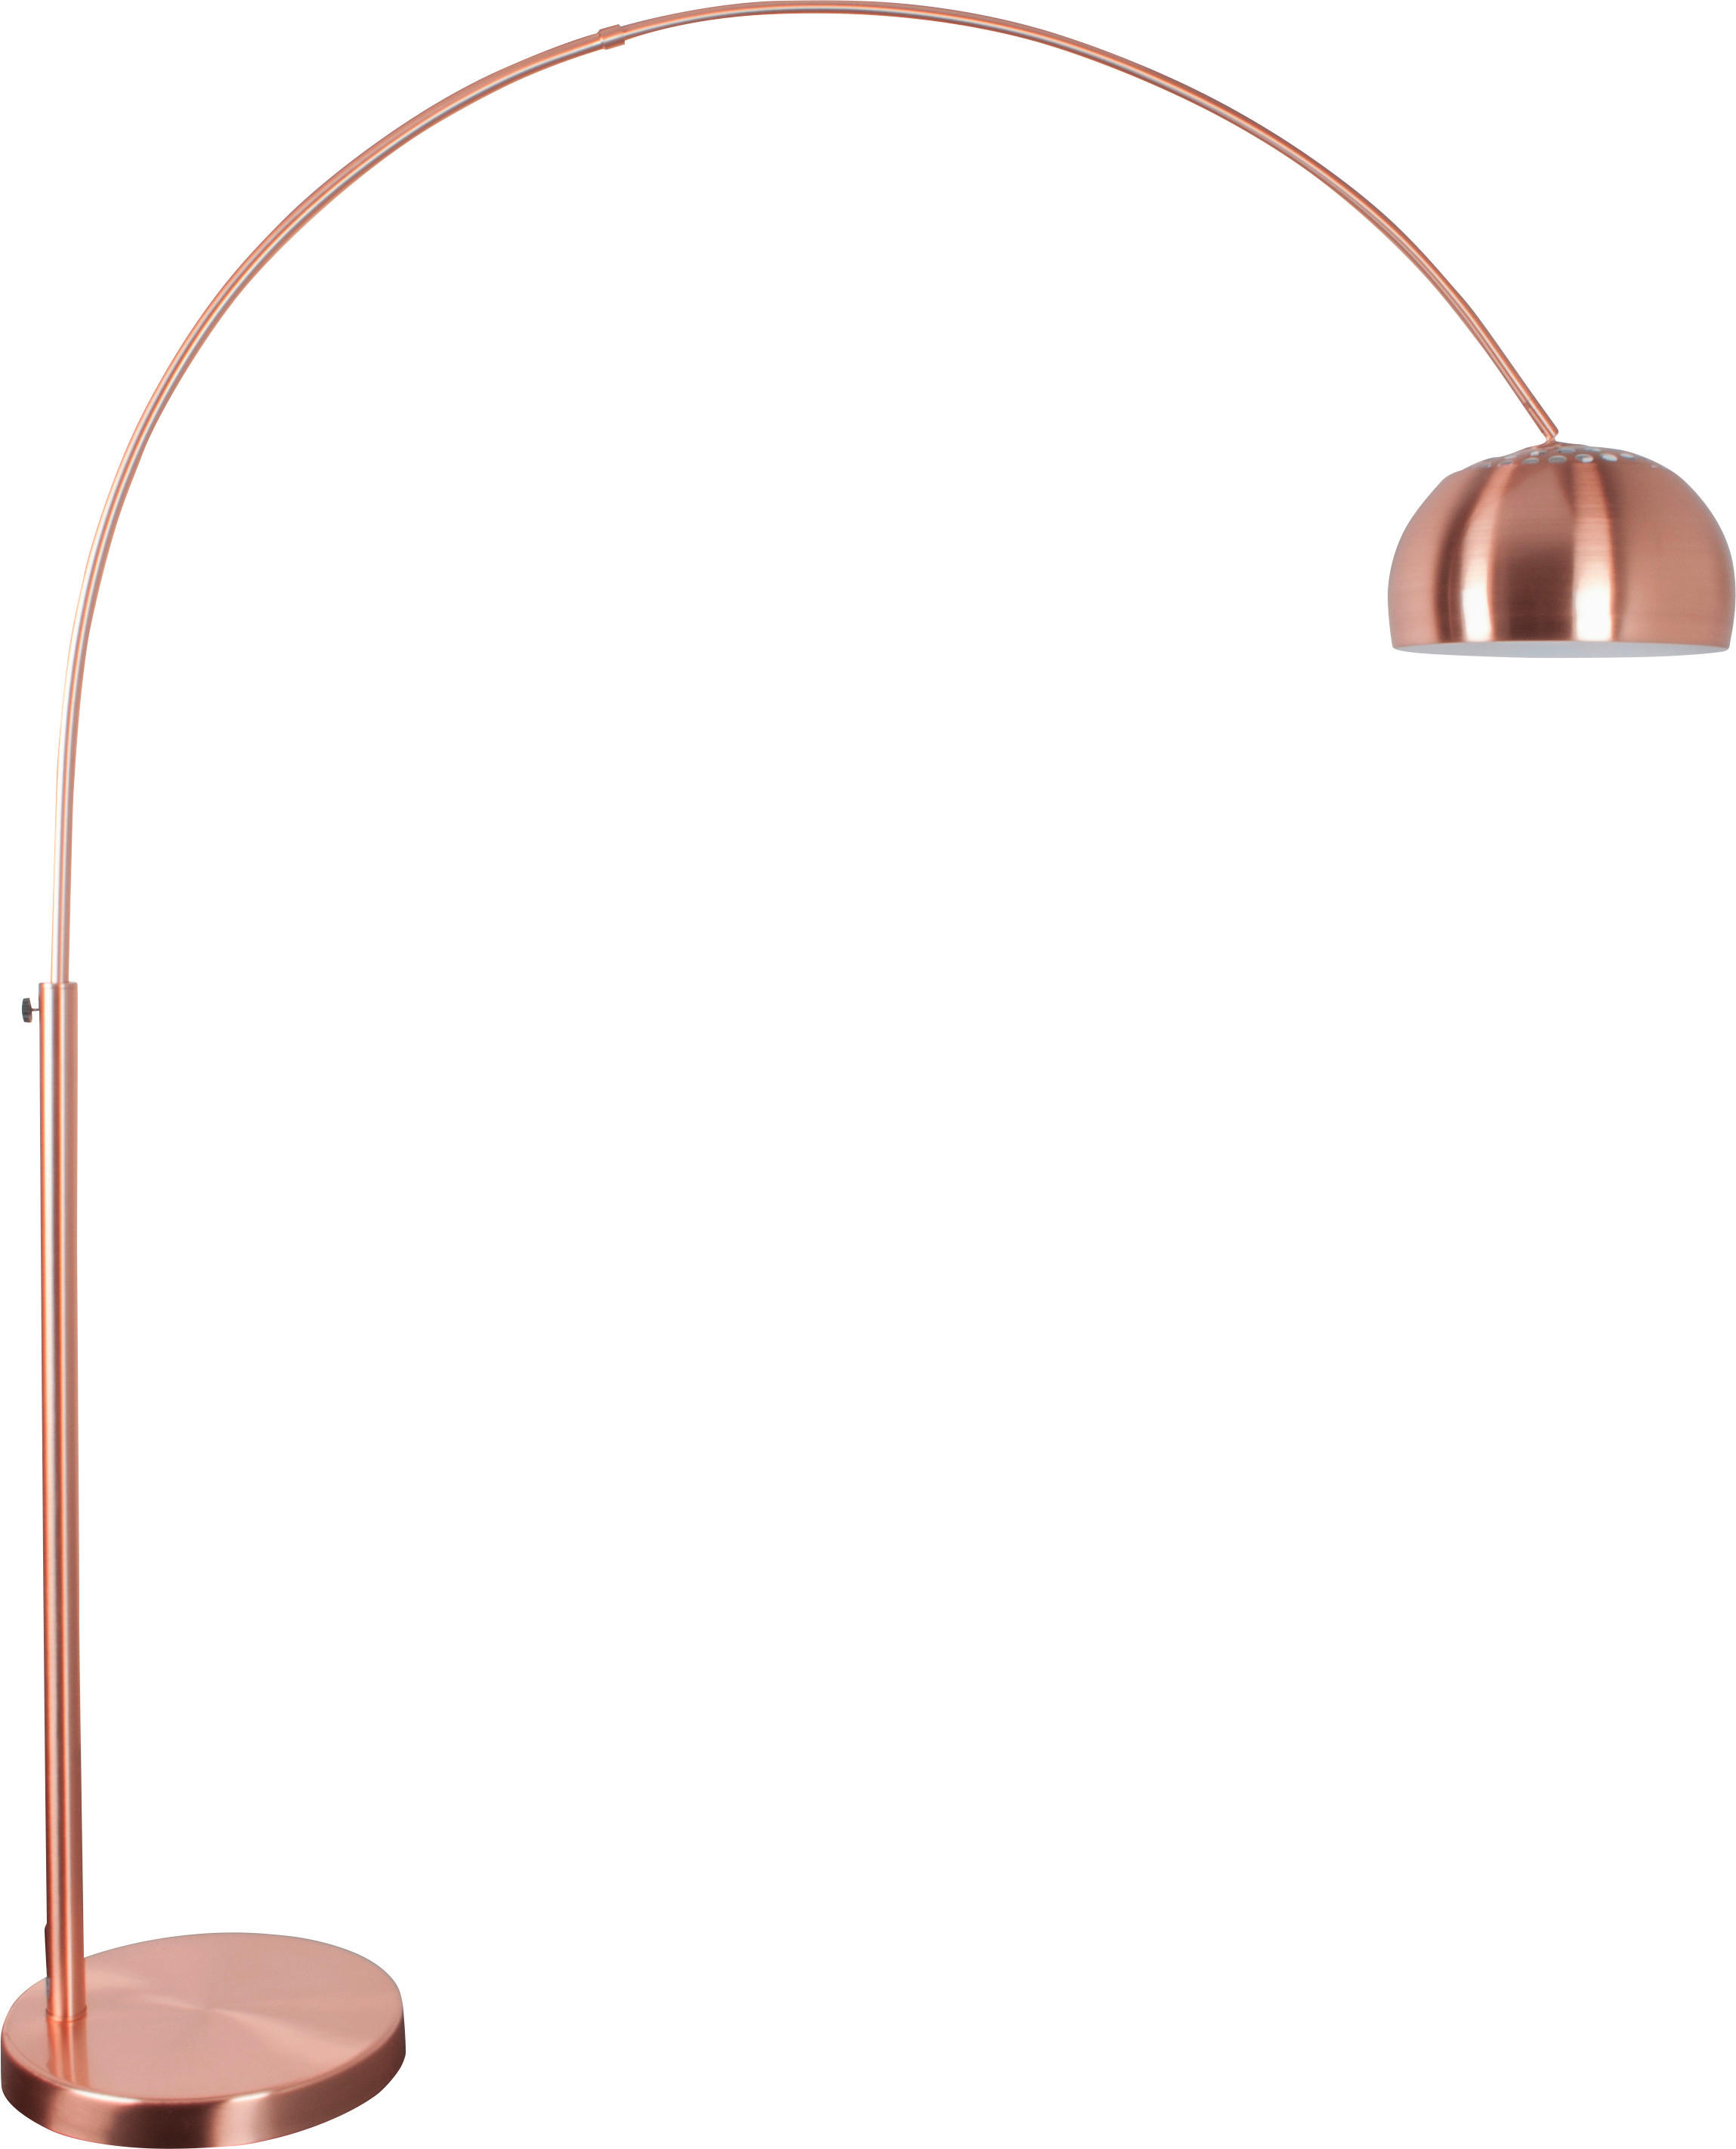 BOGENLEUCHTE  170/205 cm   - Kupferfarben, Design, Metall (170/205cm) - Zuiver